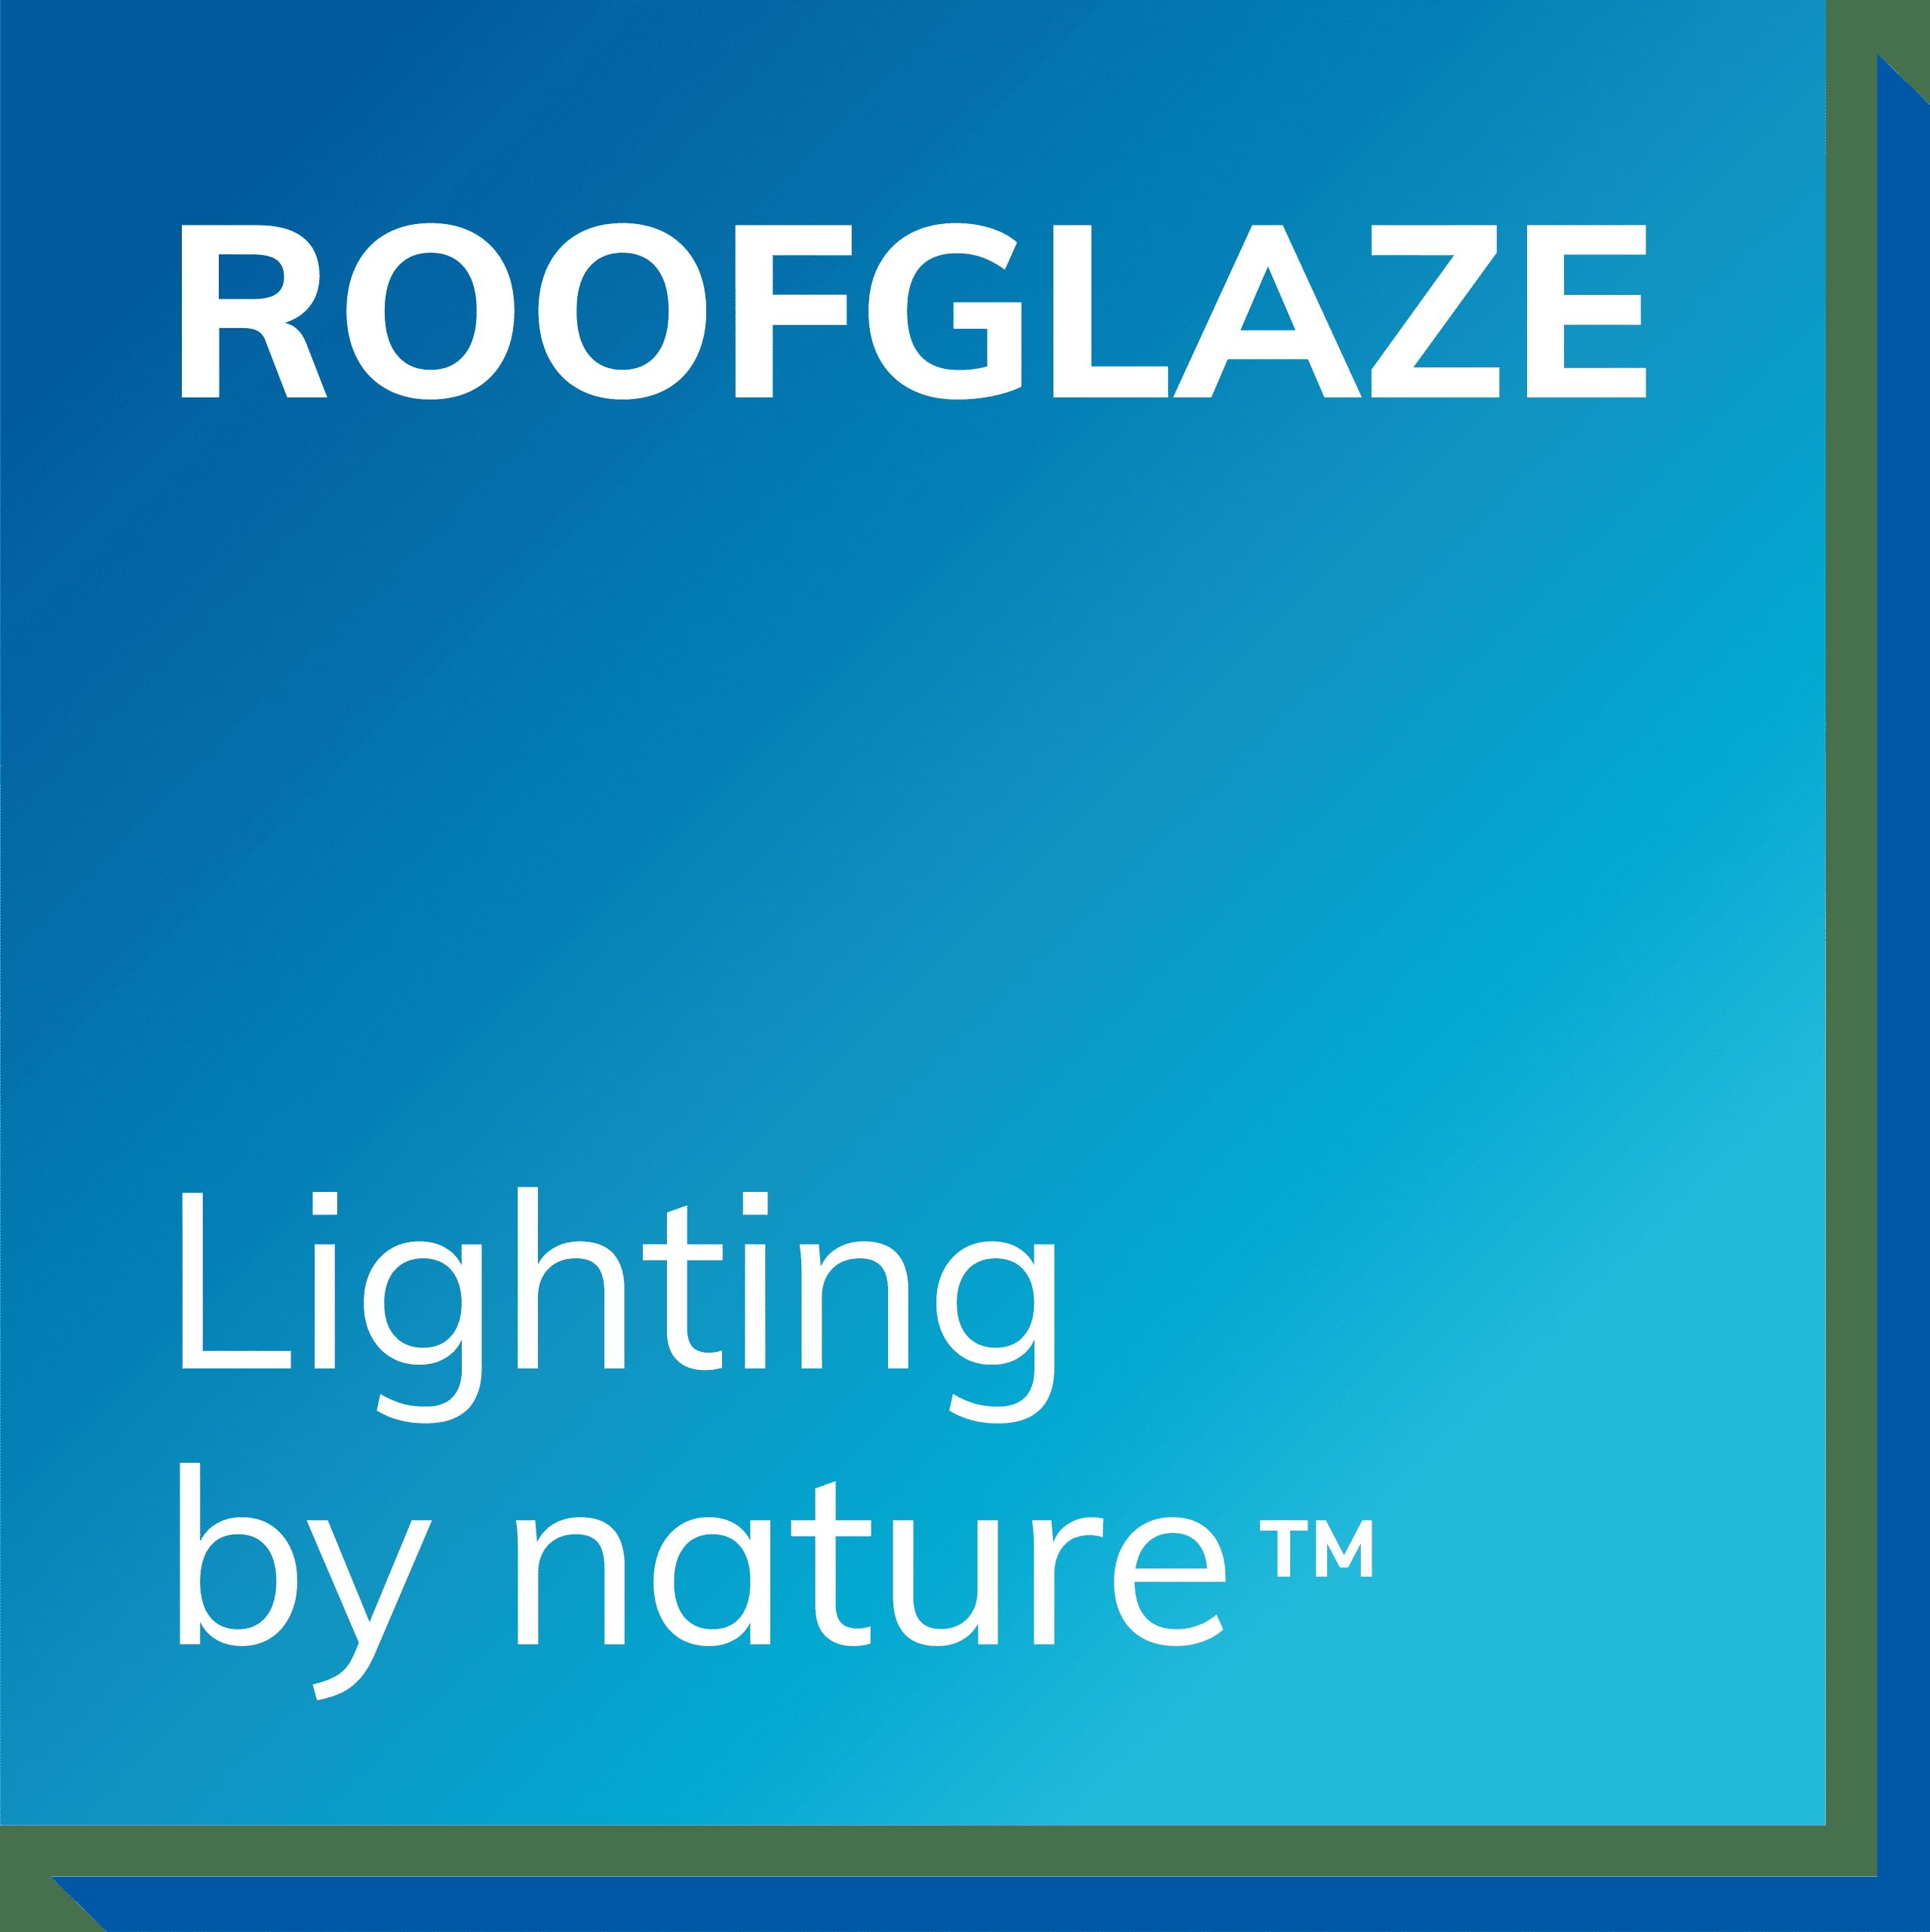 Roofglaze roof light manufacturer